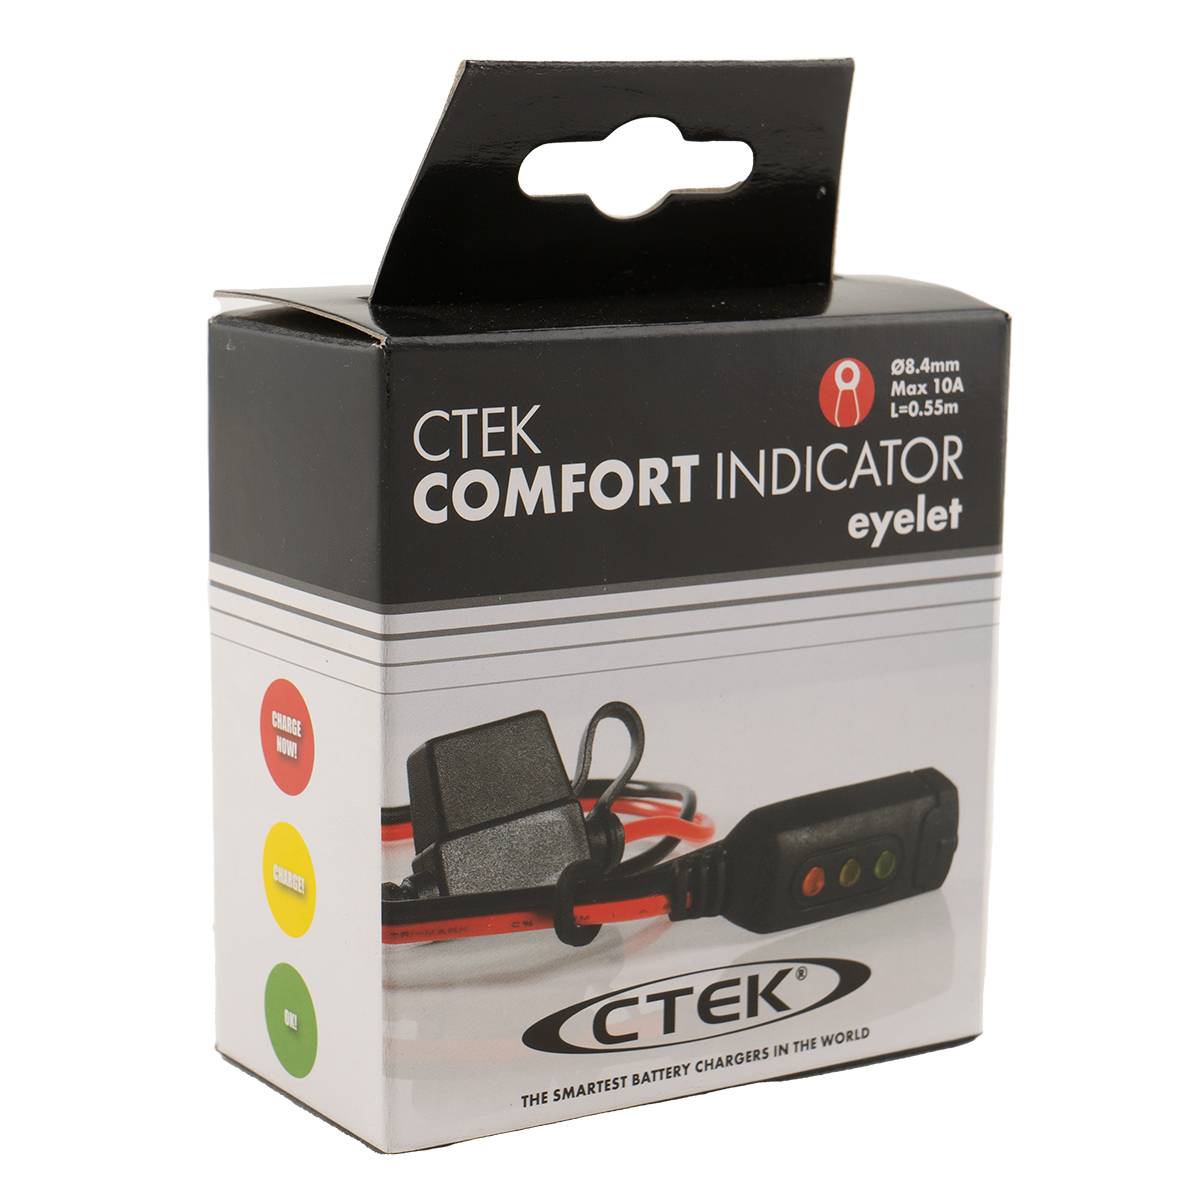 CTEK Comfort Indicator Eyelet M8 Kabellänge 550mm Ladezustandanzeige für Batterien